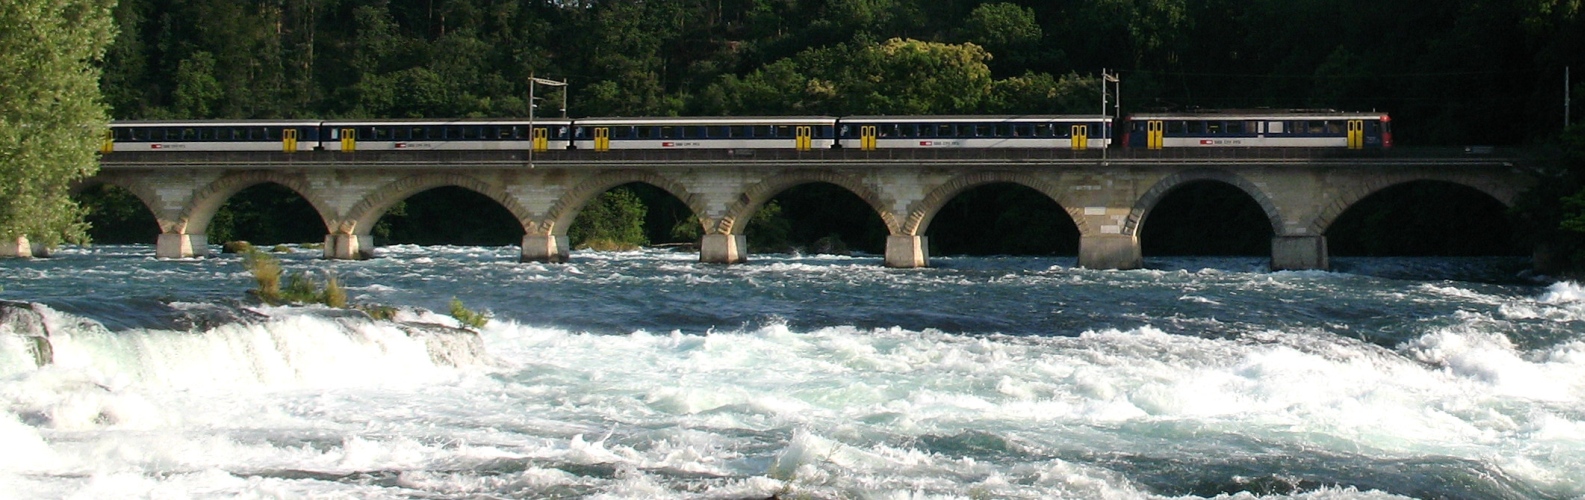 Rheinfall-Brücke